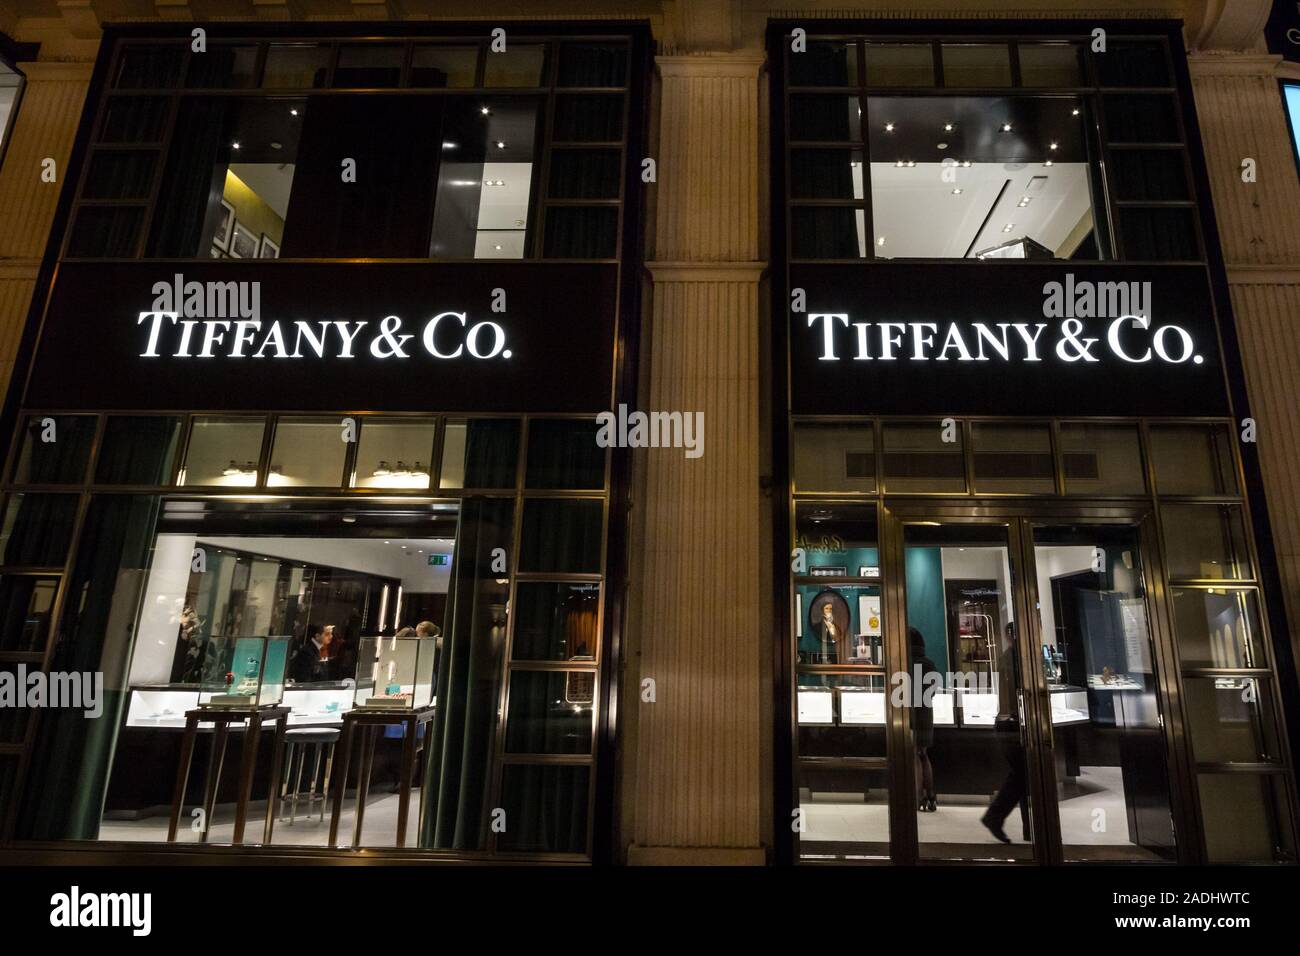 Wien, ÖSTERREICH - NOVEMBER 6, 2019: Tiffany & Co Logo vor Ihrer wichtigsten Store für Wien. Tiffany & Co. ist ein US-amerikanischer Luxus Schmuck Kette von Sto Stockfoto